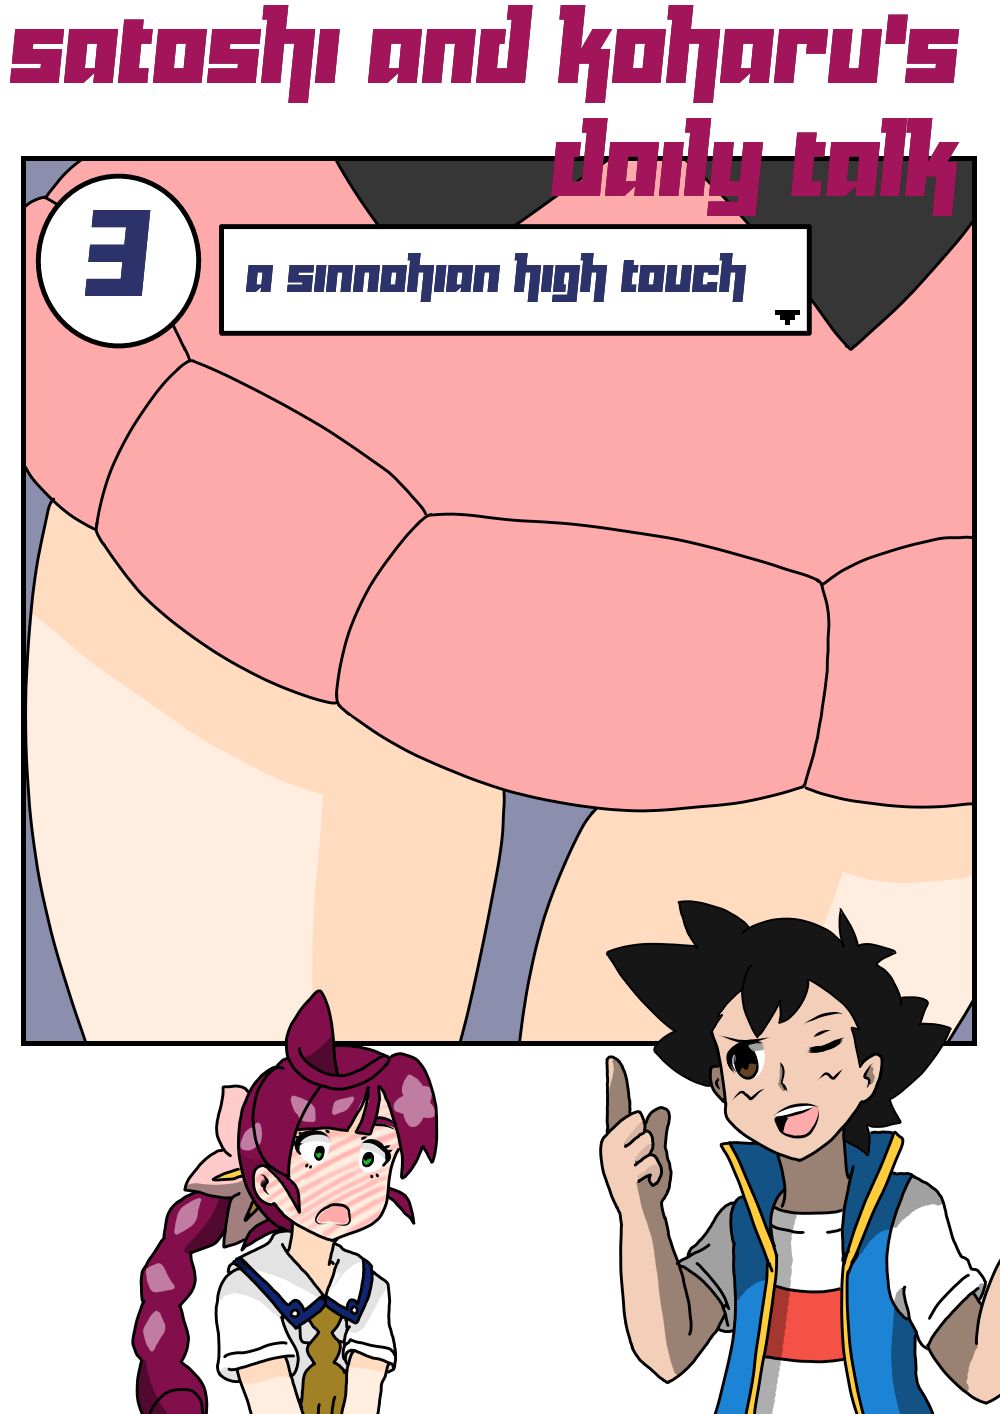 SureFap xxx porno Pokemon - [Maoukouichi] - Satoshi and Koharu's Daily Talk: 3 A Sinnohian High Touch